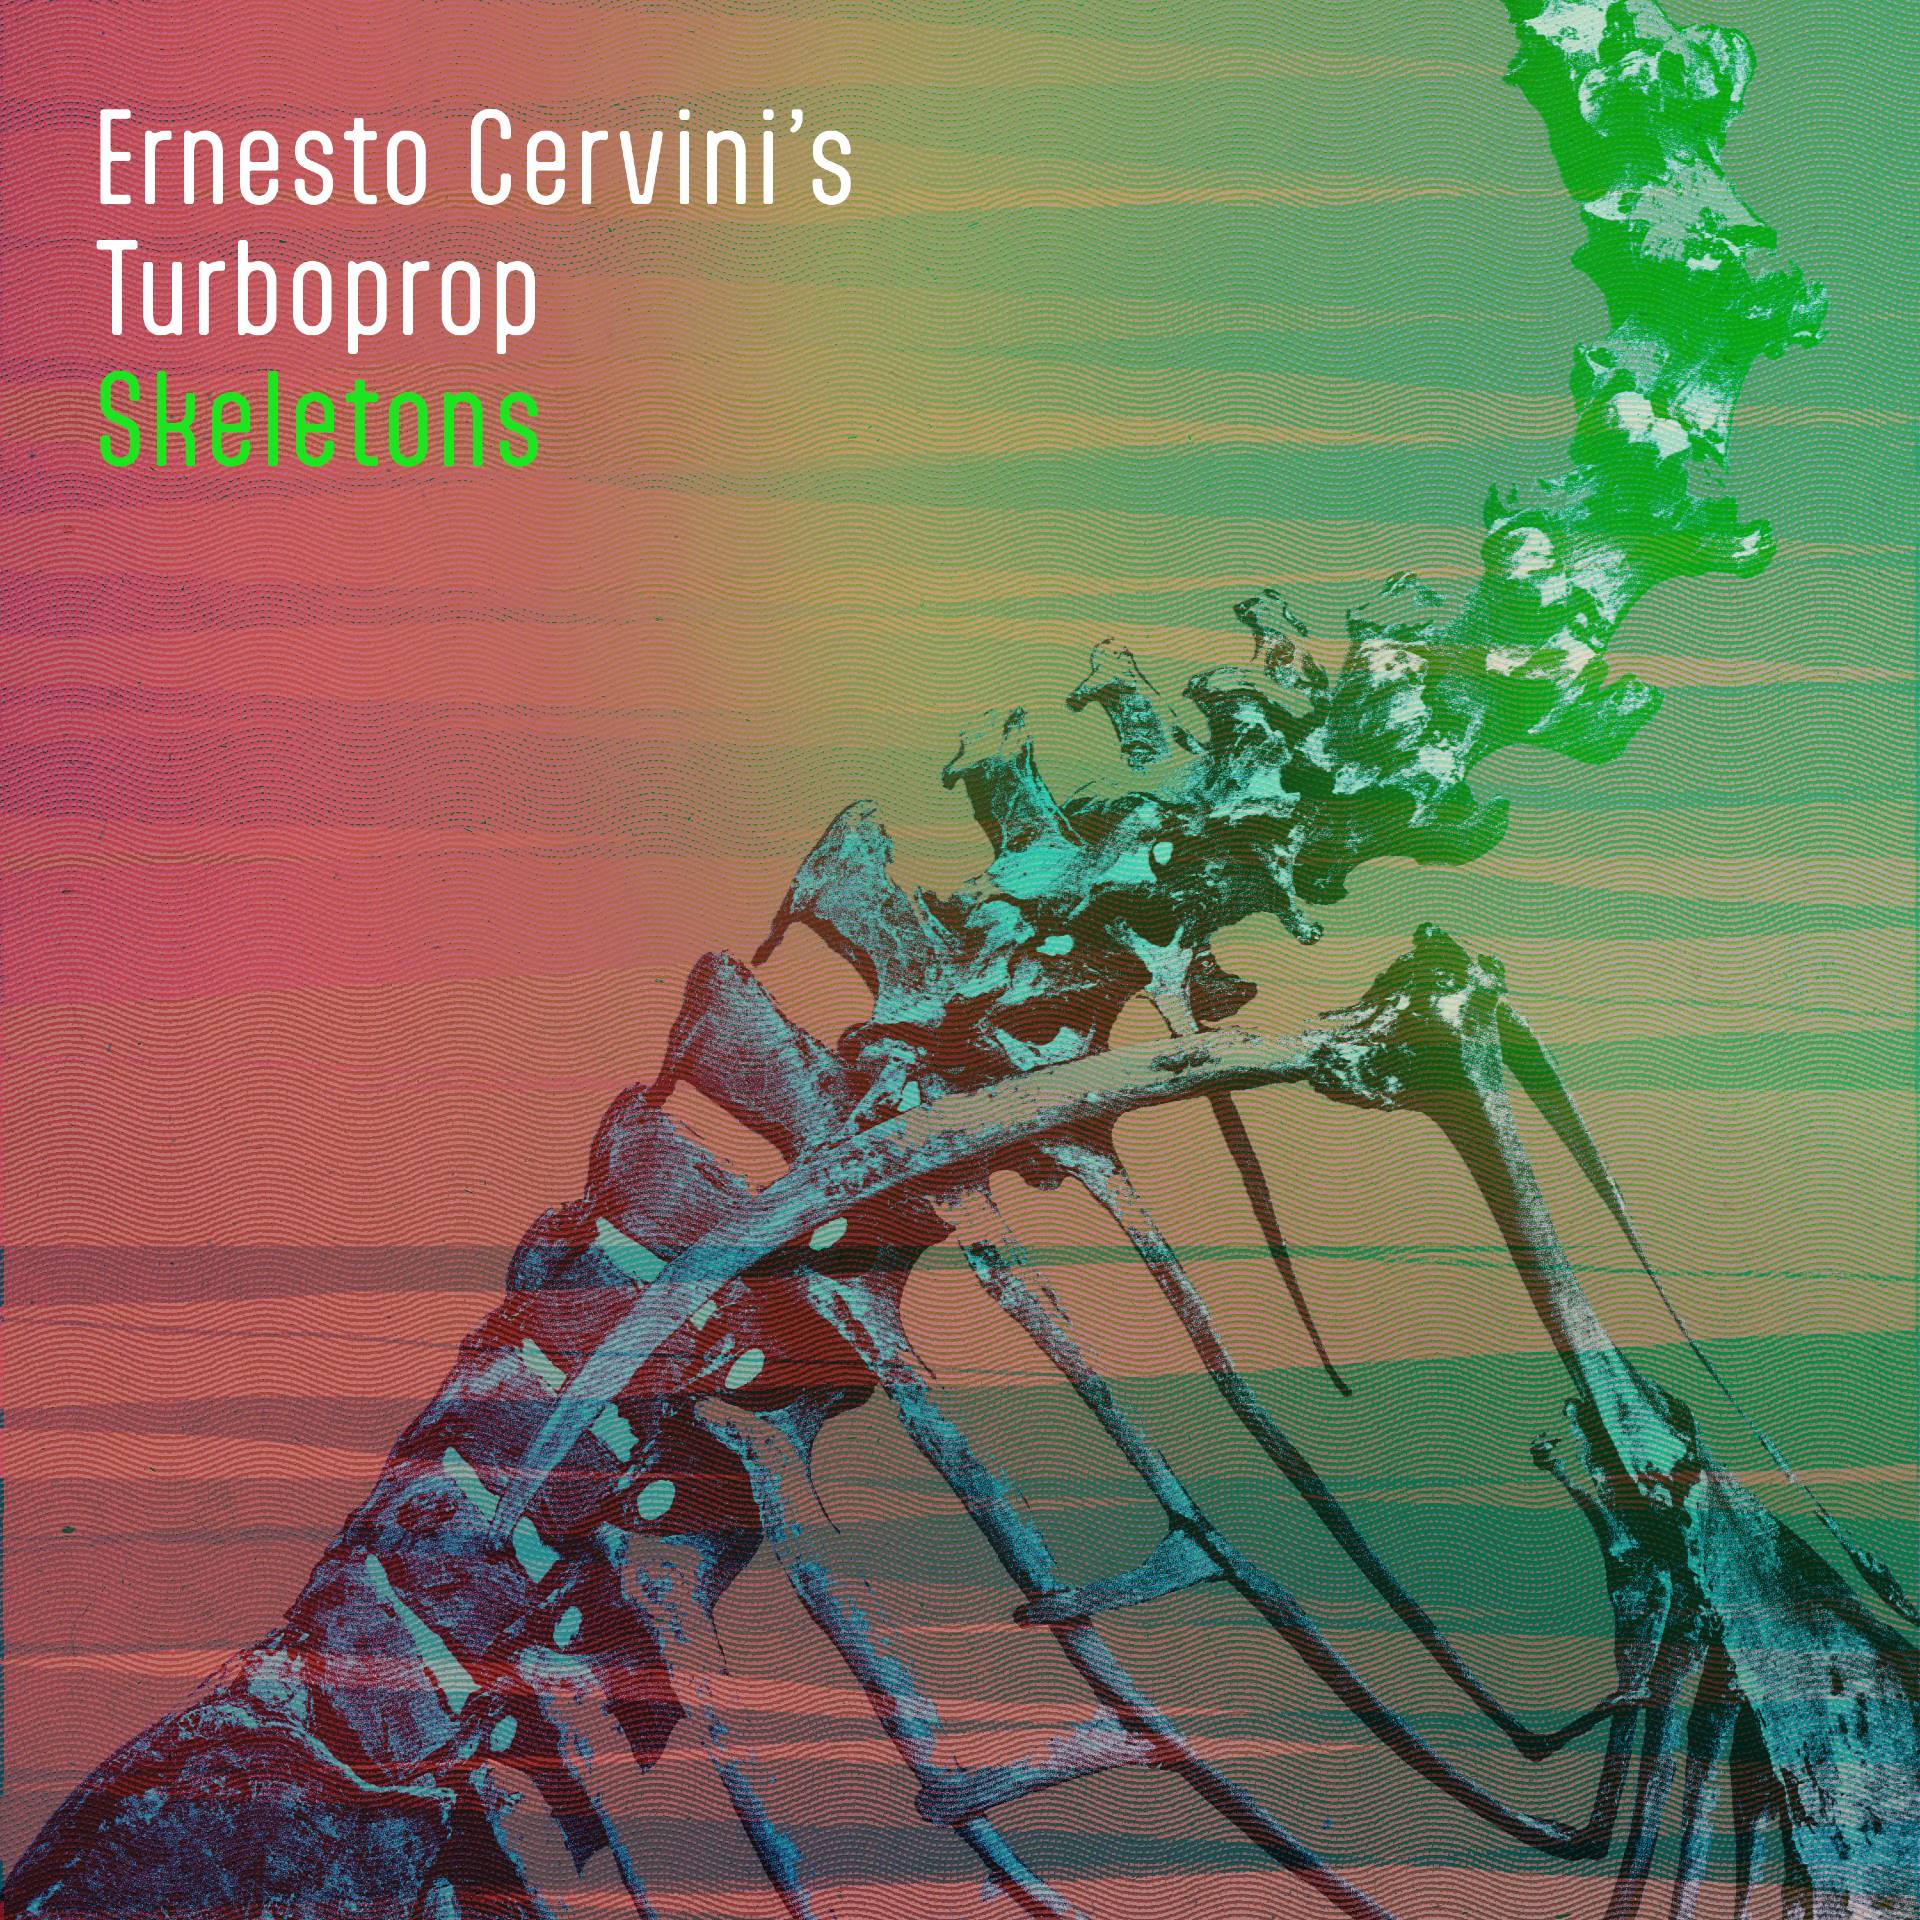 Ernesto Cervini’s Turboprop “Skeletons” single artwork